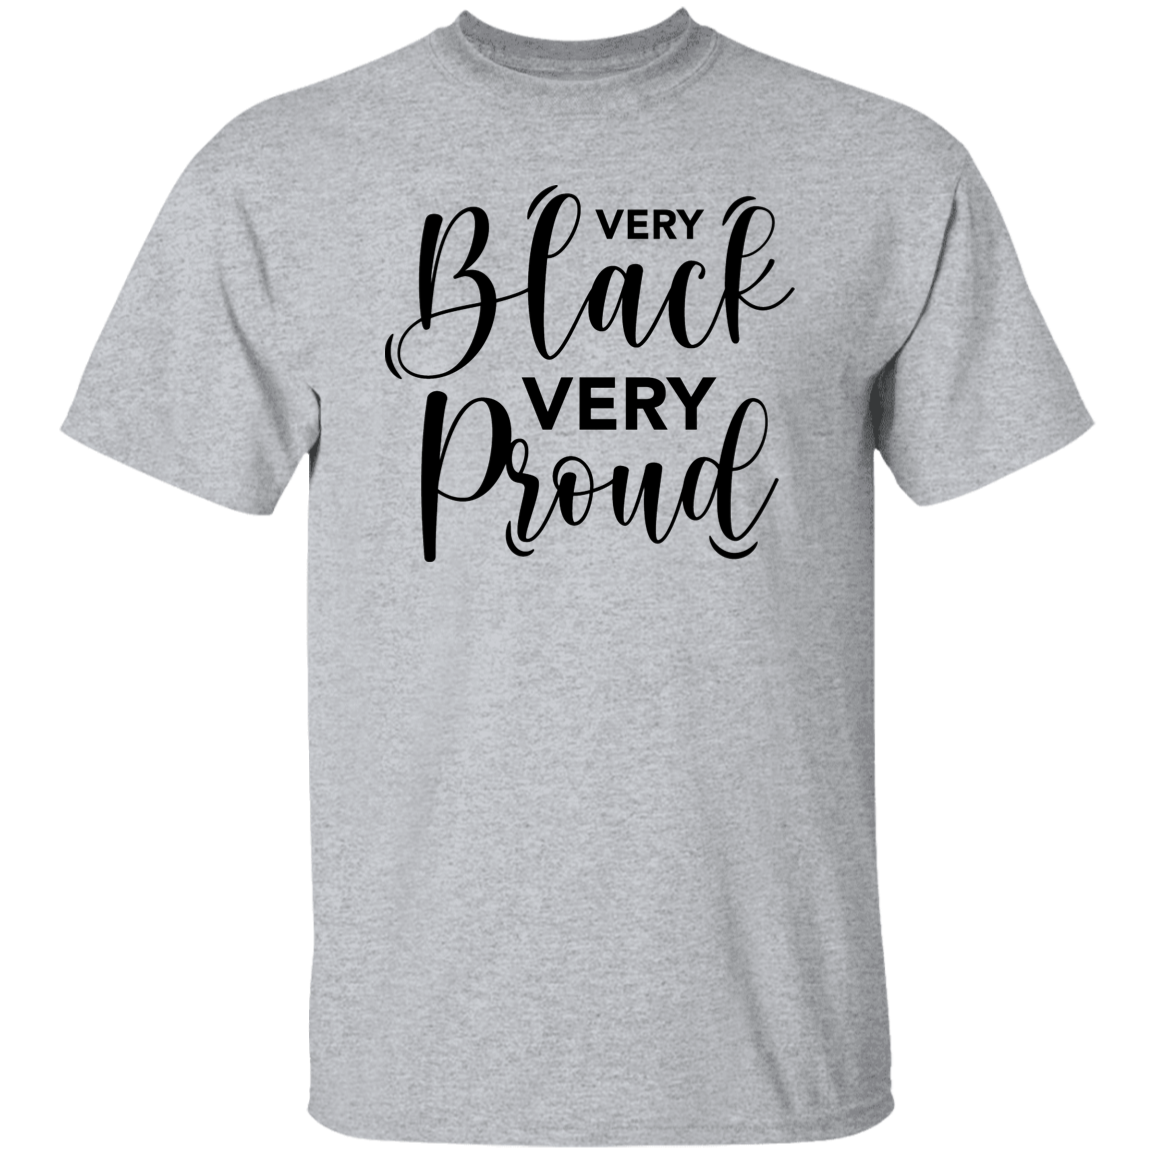 Very Black T-Shirt